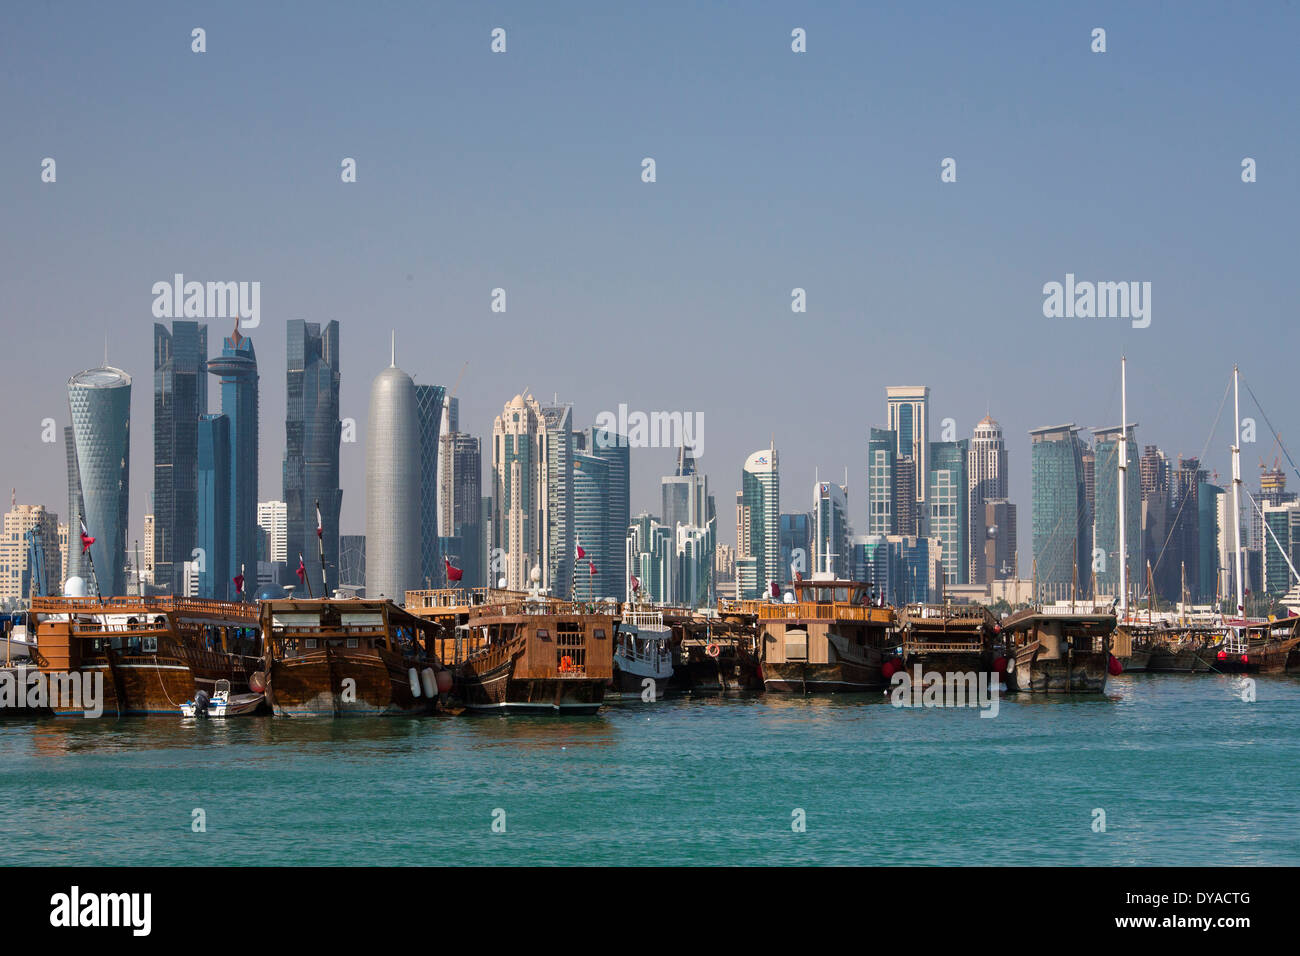 Doha in Qatar Medio Oriente architettura barche baia edifici colorati della città futuristica harbour marina skyline tourist Foto Stock